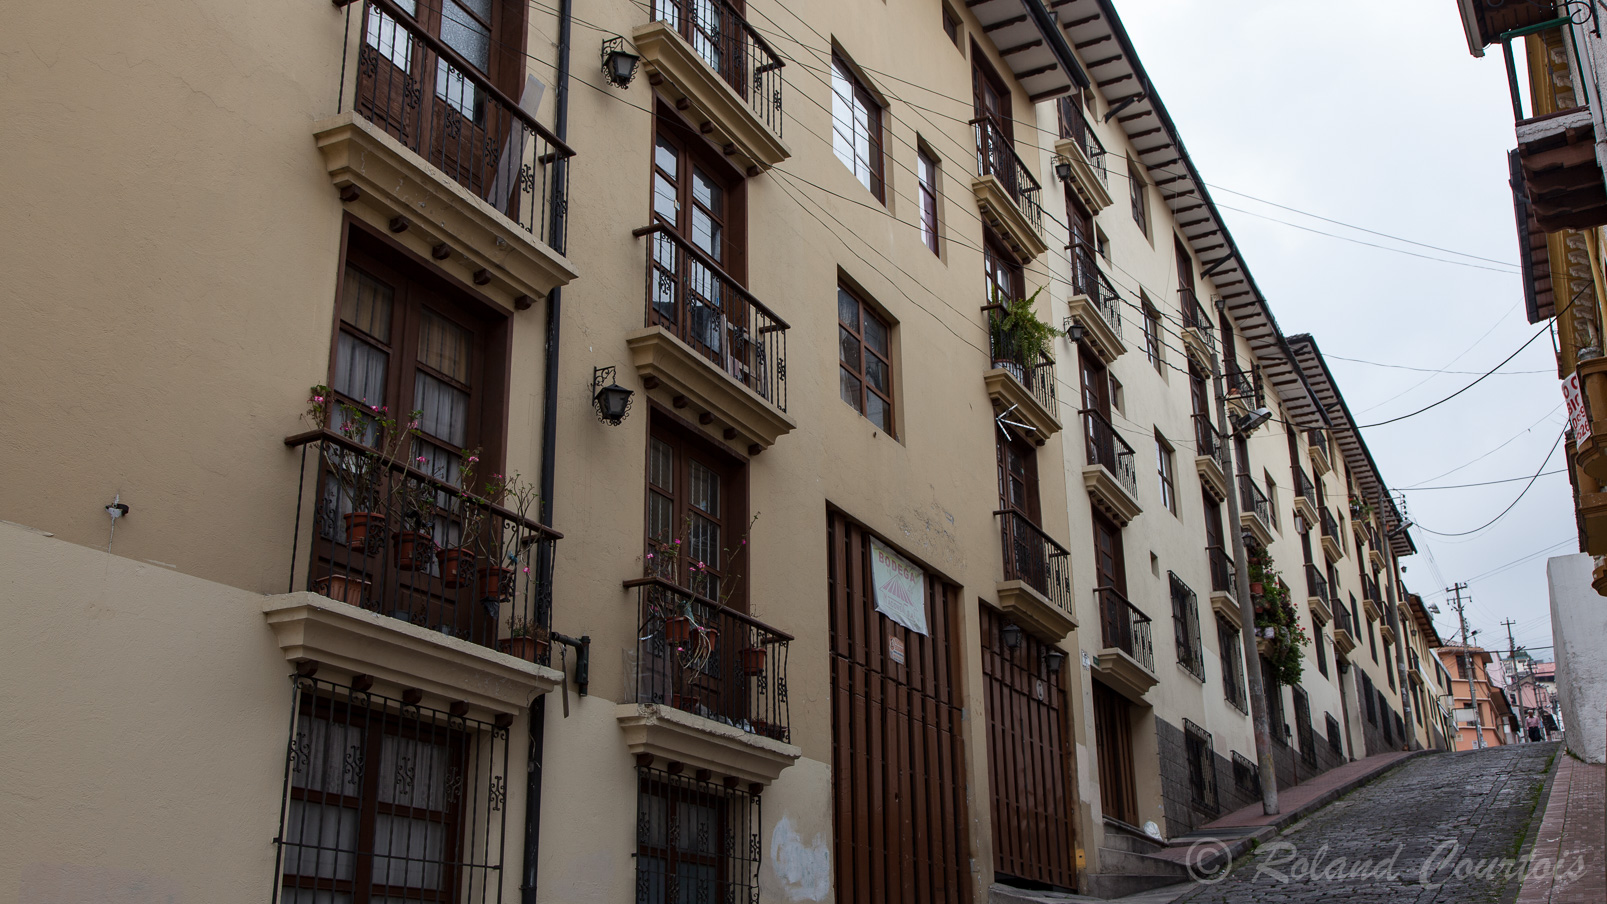 Ruelle en forte pente de la ville de Quito.